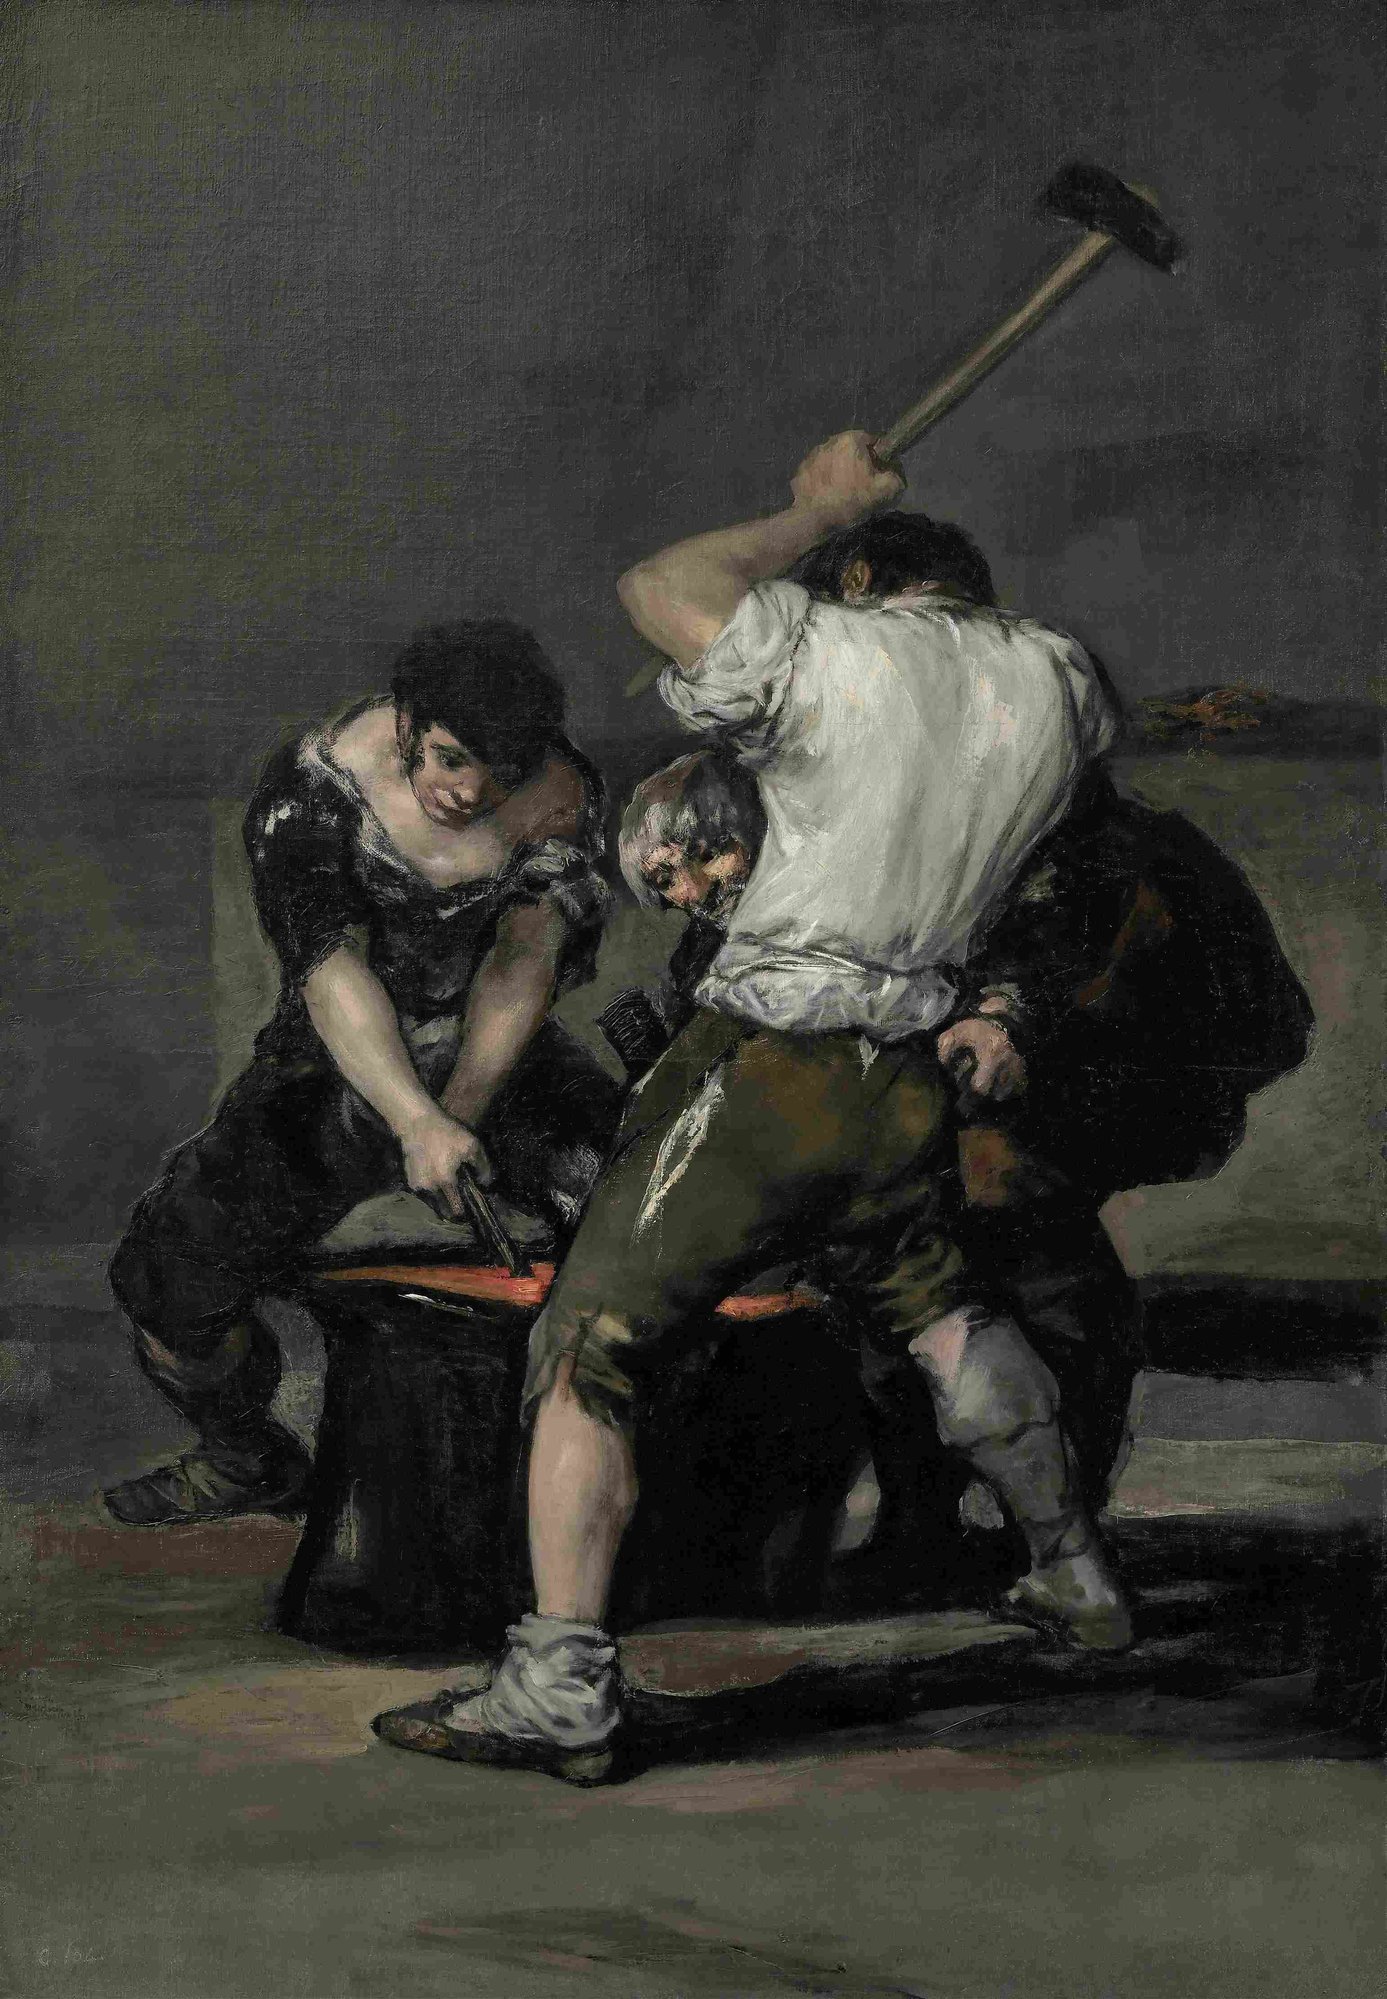 Francisco de Goya, The Forge (circa 1815-1820)